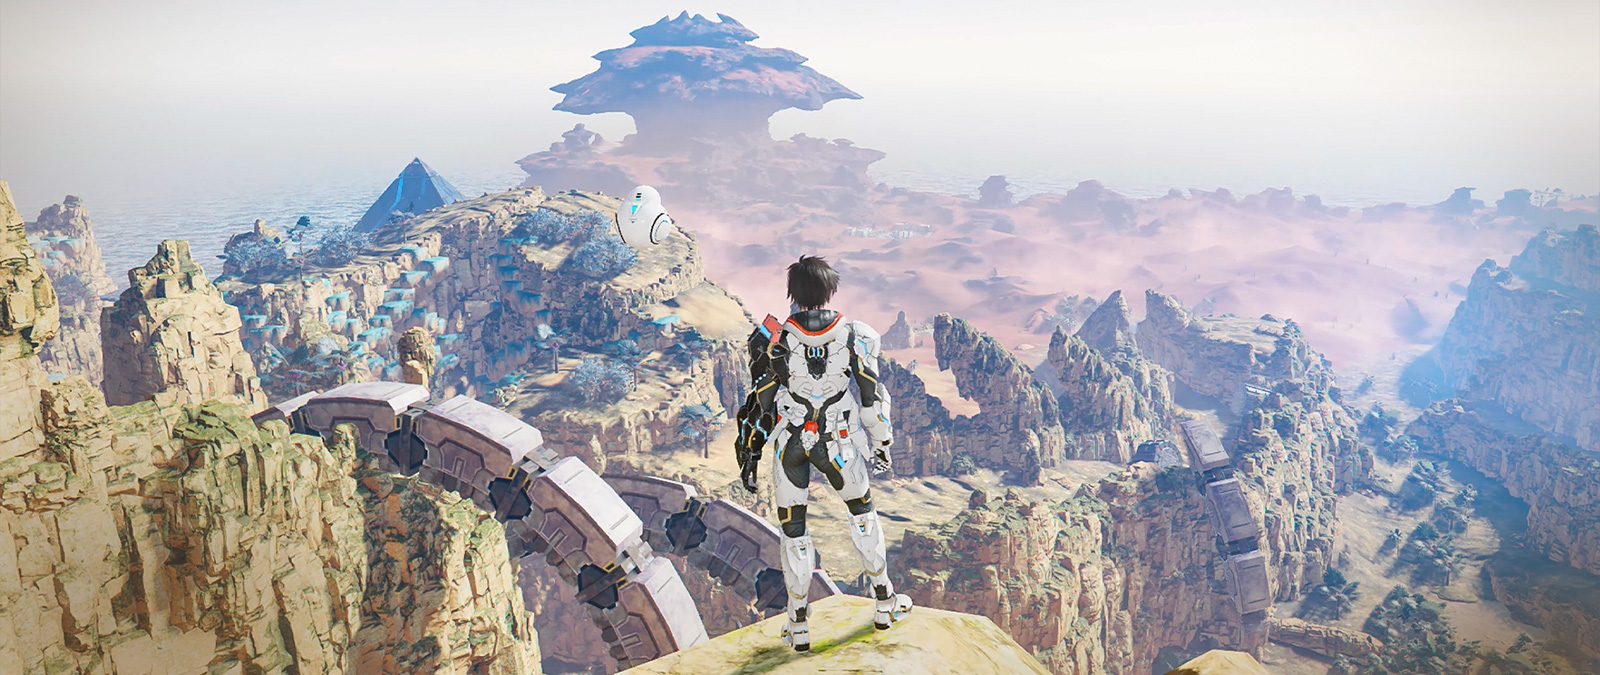 Un personaje con armadura está en un acantilado mirando un valle.